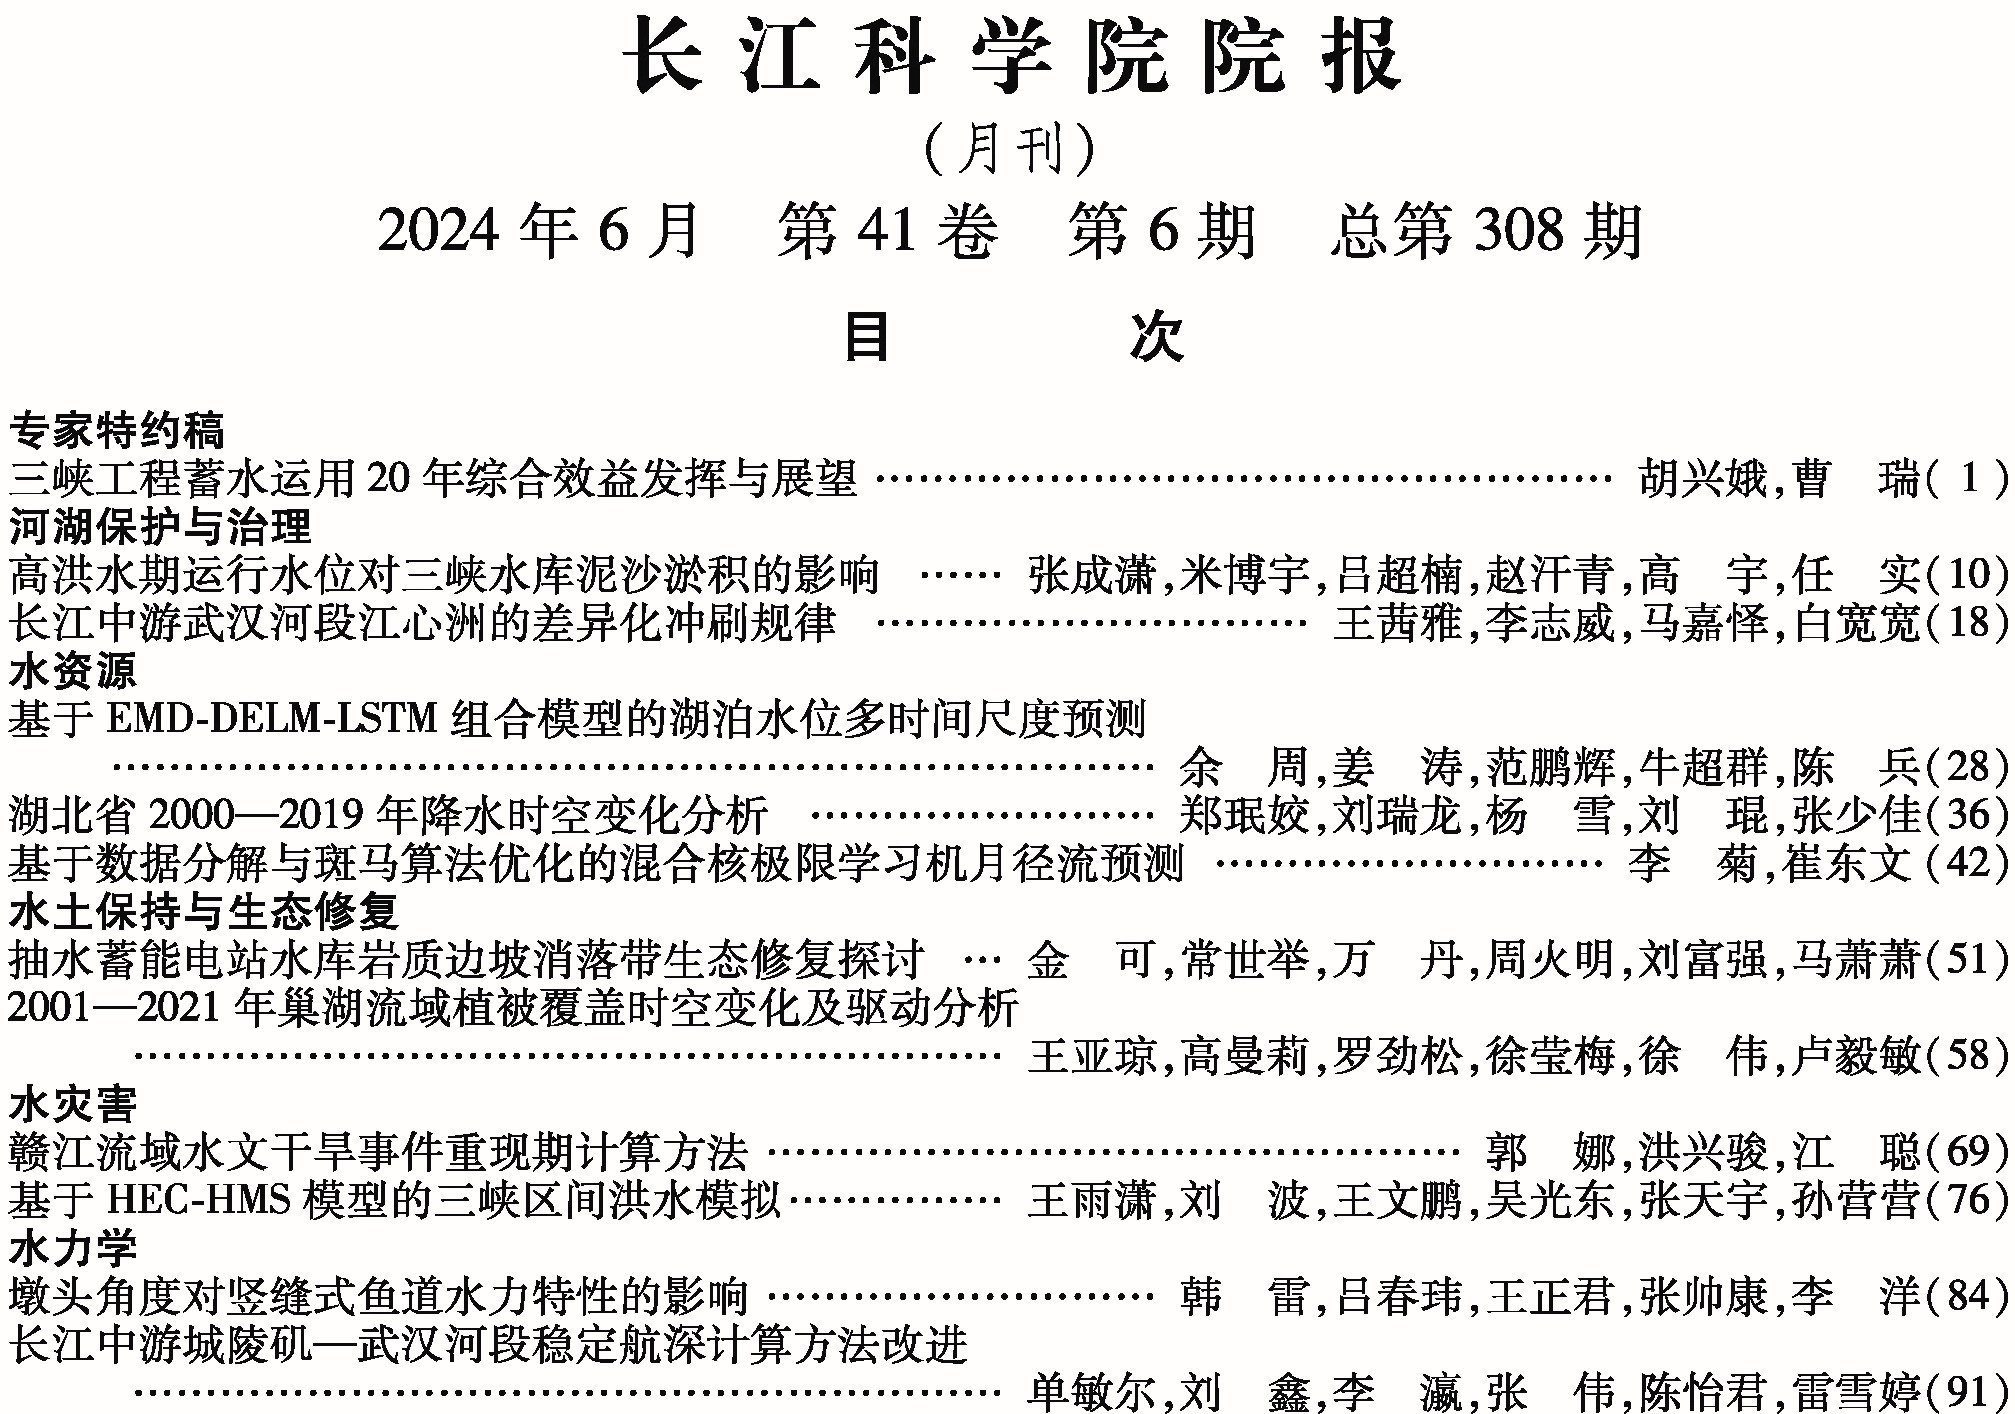 《长江科学院院报》2024年第6期目次 下部的图片_有专家特约稿1.jpg